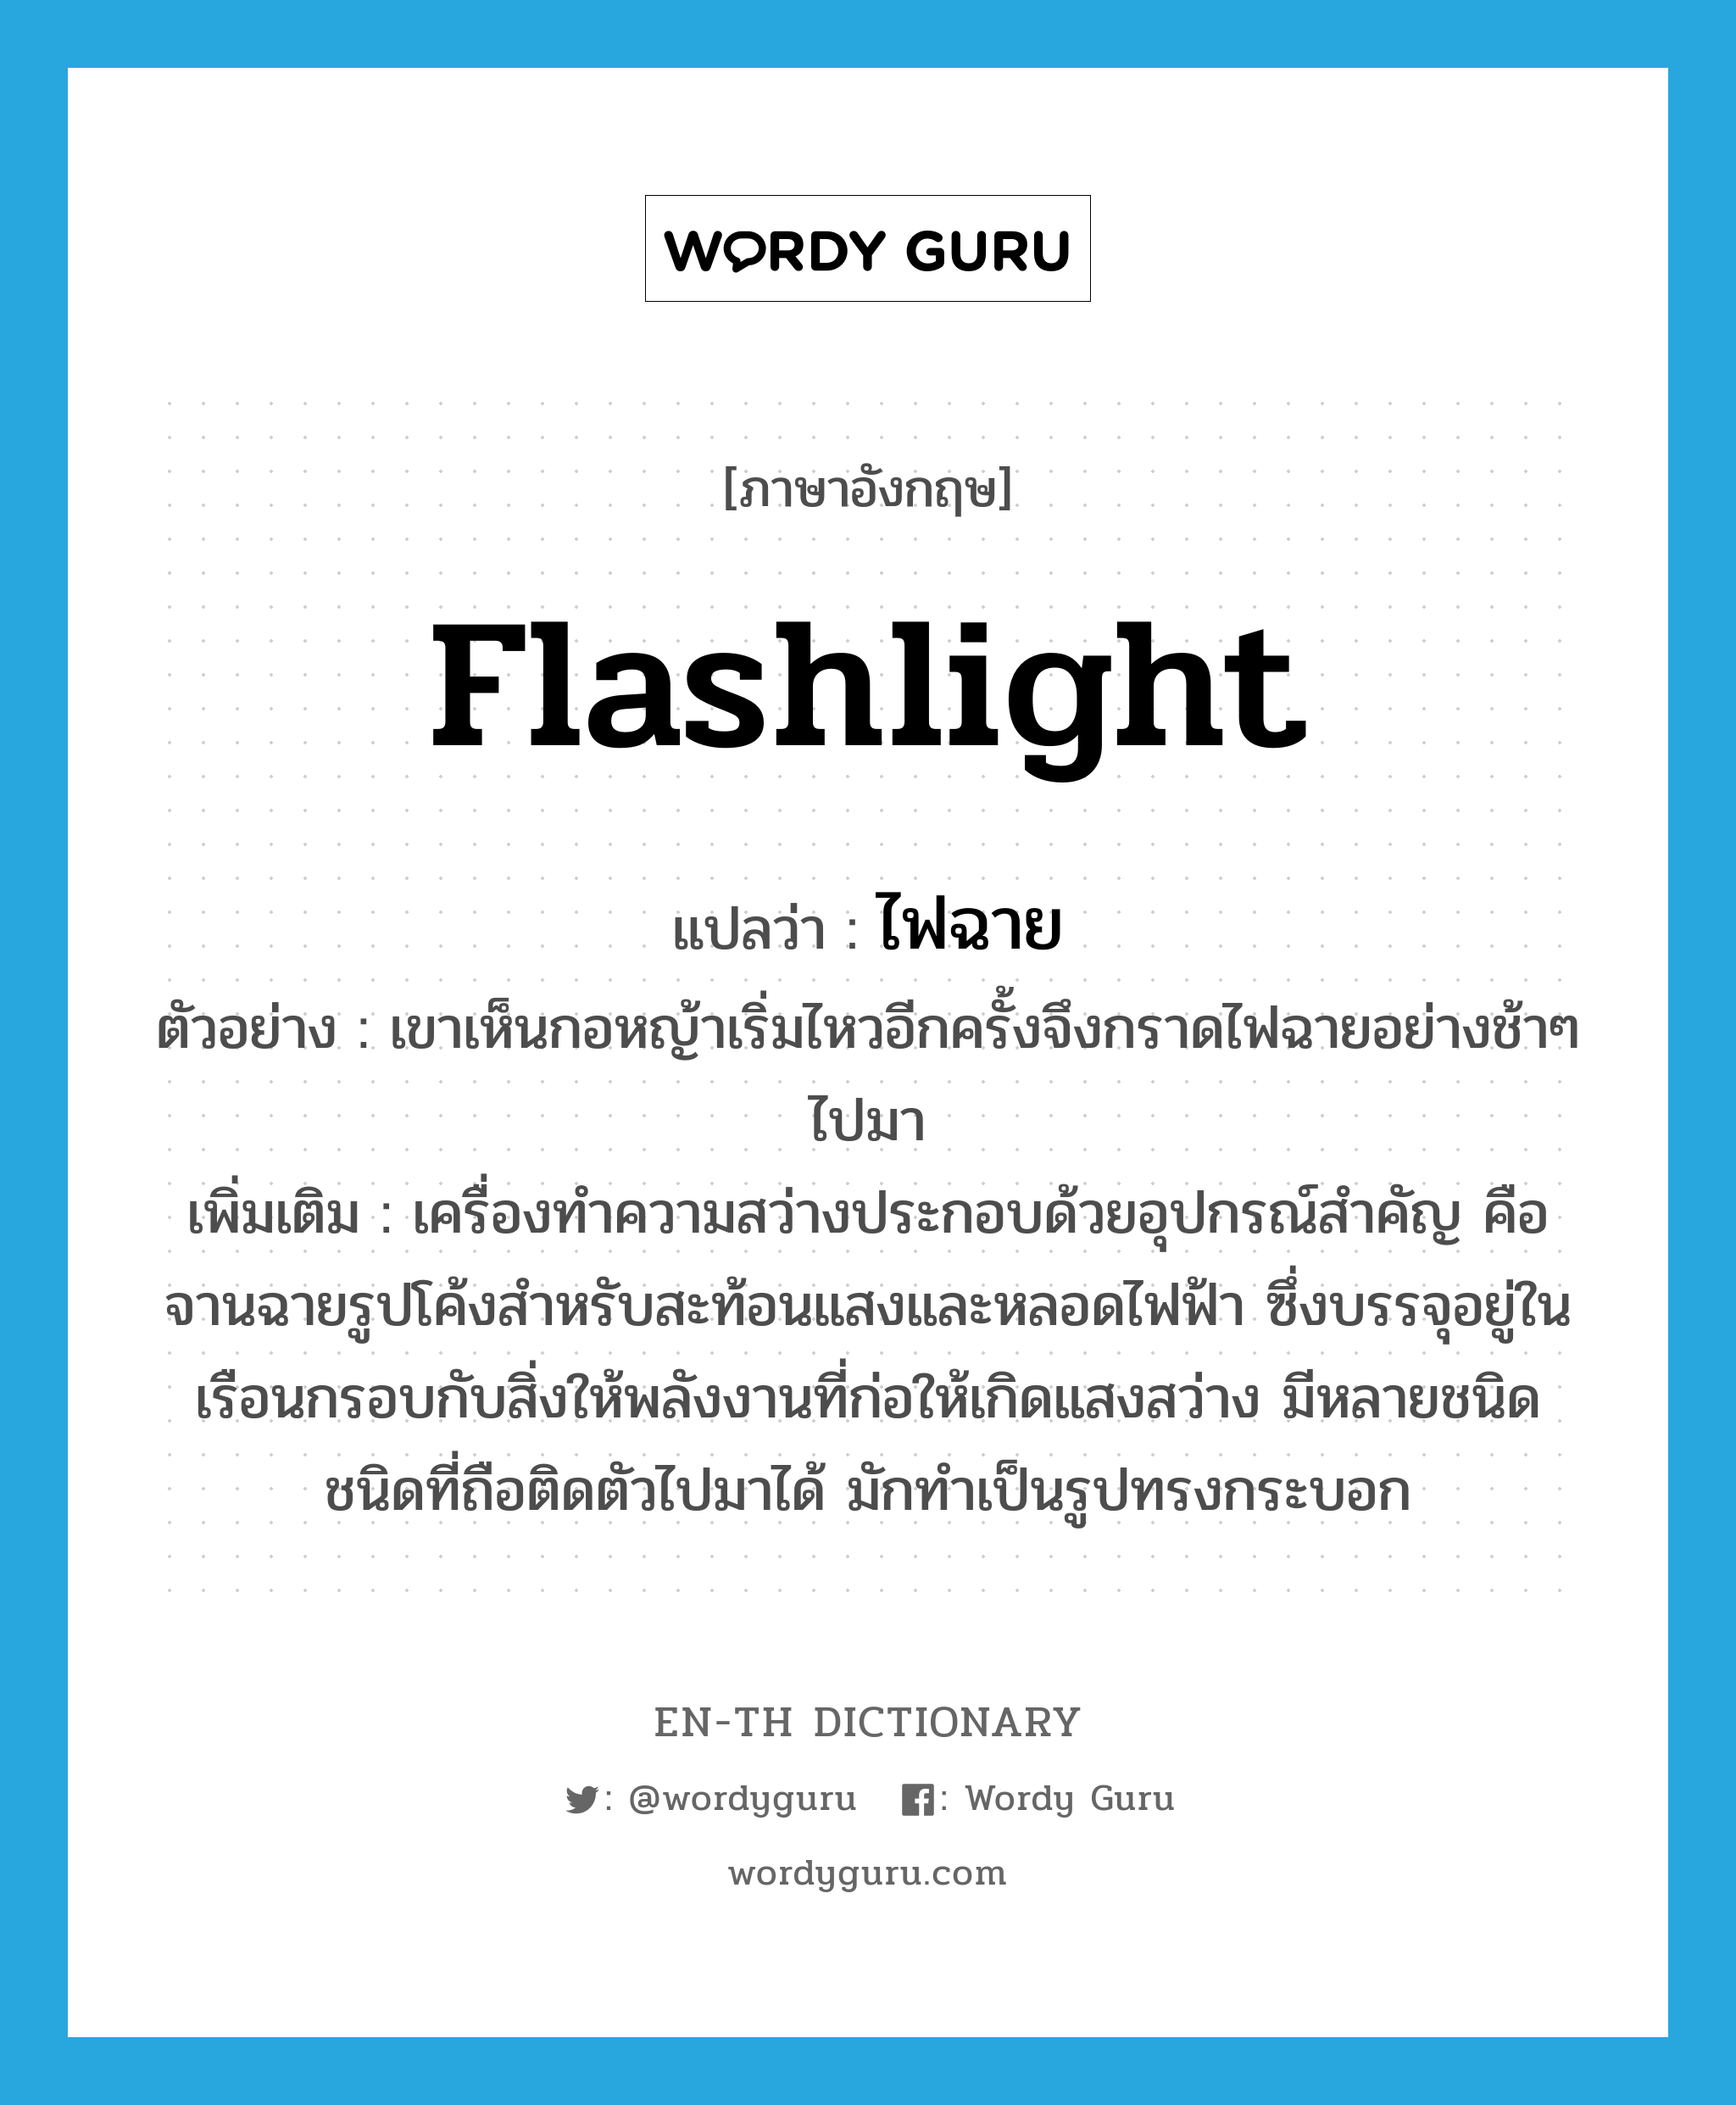 flashlight แปลว่า?, คำศัพท์ภาษาอังกฤษ flashlight แปลว่า ไฟฉาย ประเภท N ตัวอย่าง เขาเห็นกอหญ้าเริ่มไหวอีกครั้งจึงกราดไฟฉายอย่างช้าๆ ไปมา เพิ่มเติม เครื่องทำความสว่างประกอบด้วยอุปกรณ์สำคัญ คือ จานฉายรูปโค้งสำหรับสะท้อนแสงและหลอดไฟฟ้า ซึ่งบรรจุอยู่ในเรือนกรอบกับสิ่งให้พลังงานที่ก่อให้เกิดแสงสว่าง มีหลายชนิด ชนิดที่ถือติดตัวไปมาได้ มักทำเป็นรูปทรงกระบอก หมวด N